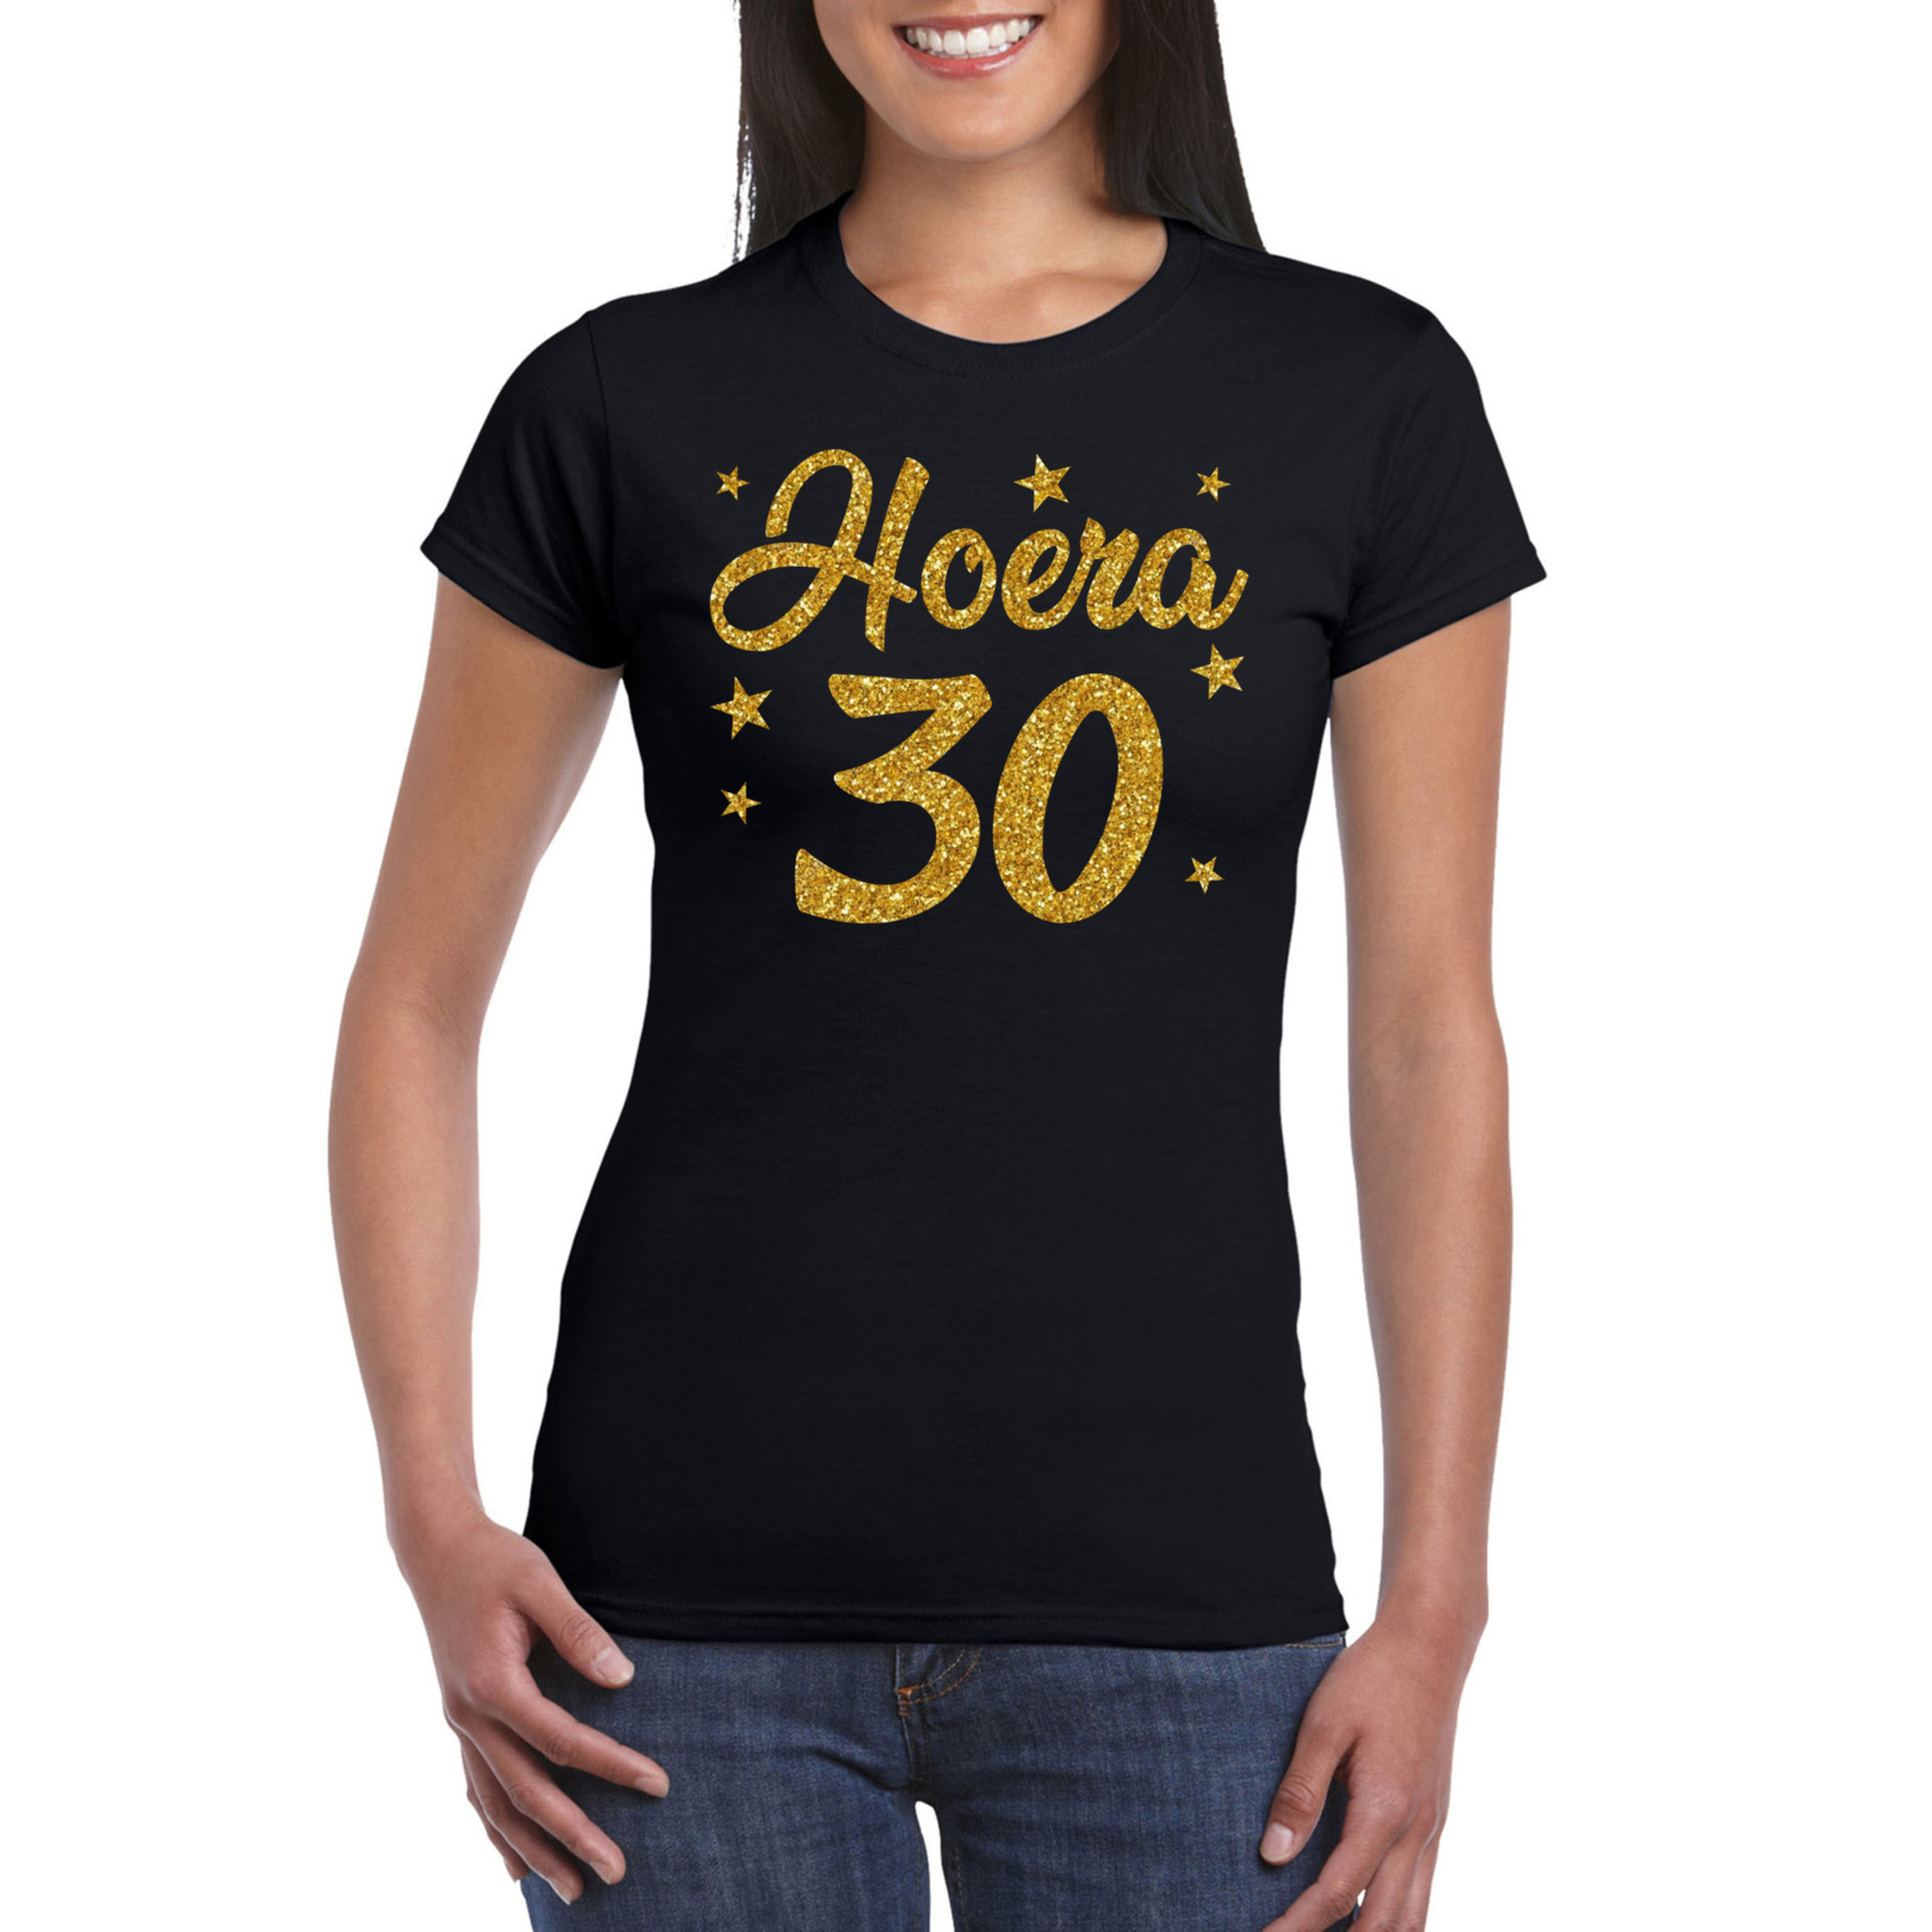 Hoera 30 jaar verjaardag / jubileum cadeau t-shirt goud glitter op zwart dames